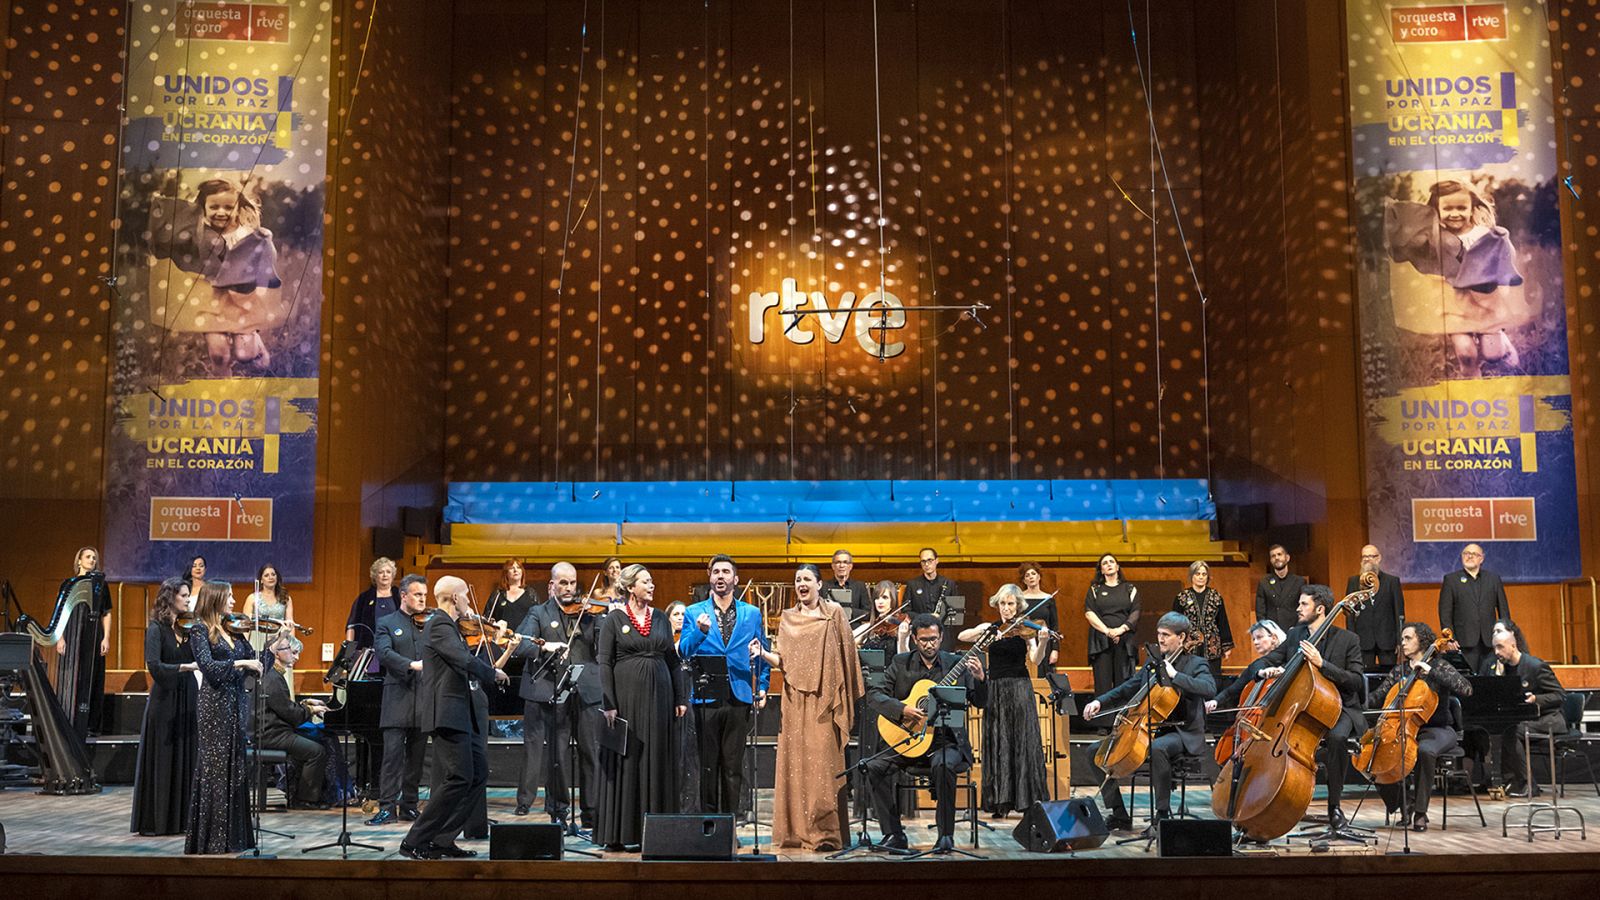 El Teatro Monumental de Madrid ha acogido el concierto benéfico